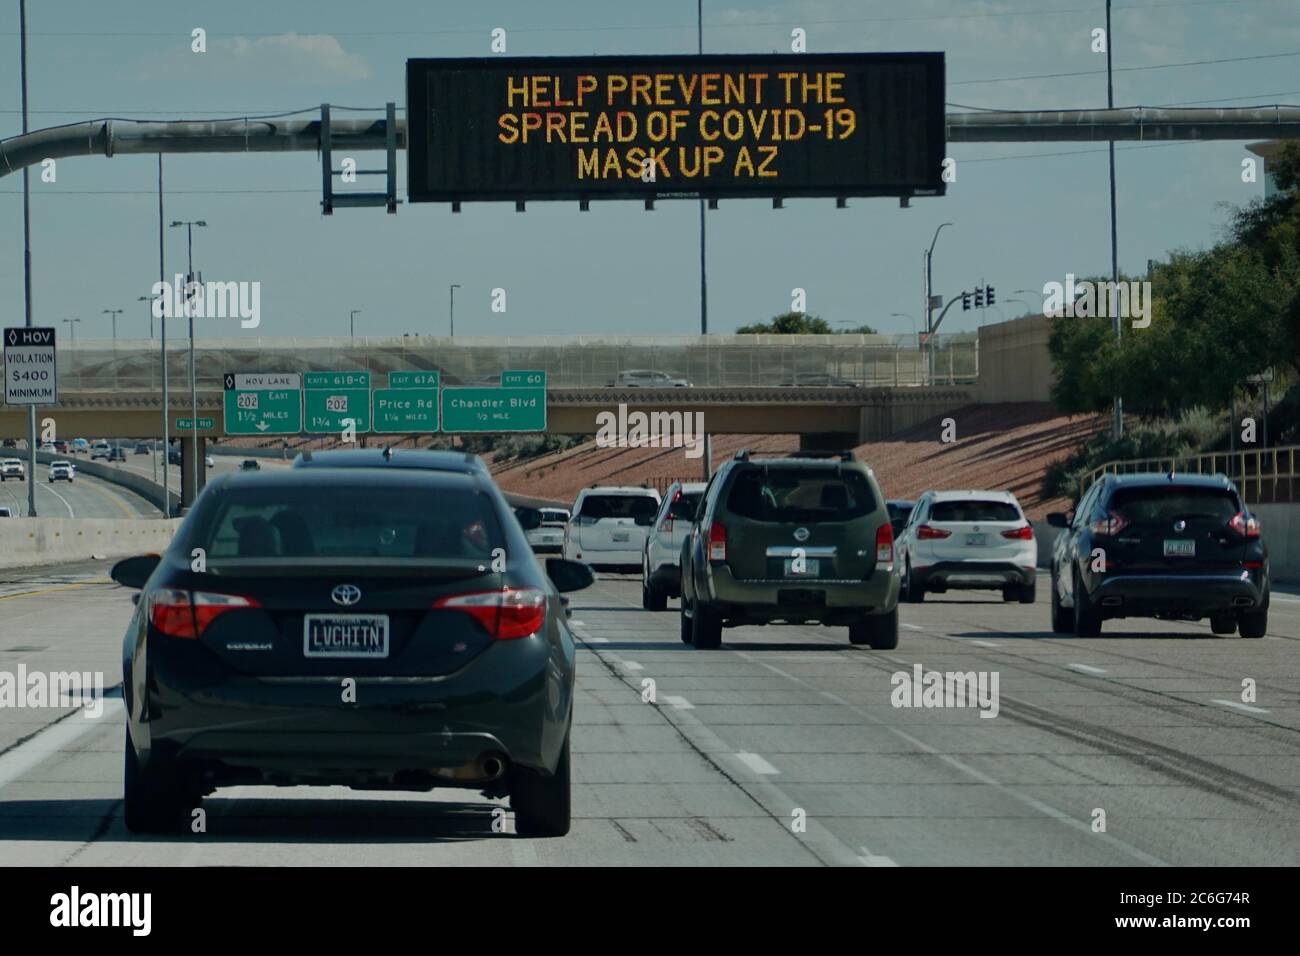 Las señales de la calle en la carretera muestran conciencia y advertencias para la pandemia COVID-19. Foto de stock